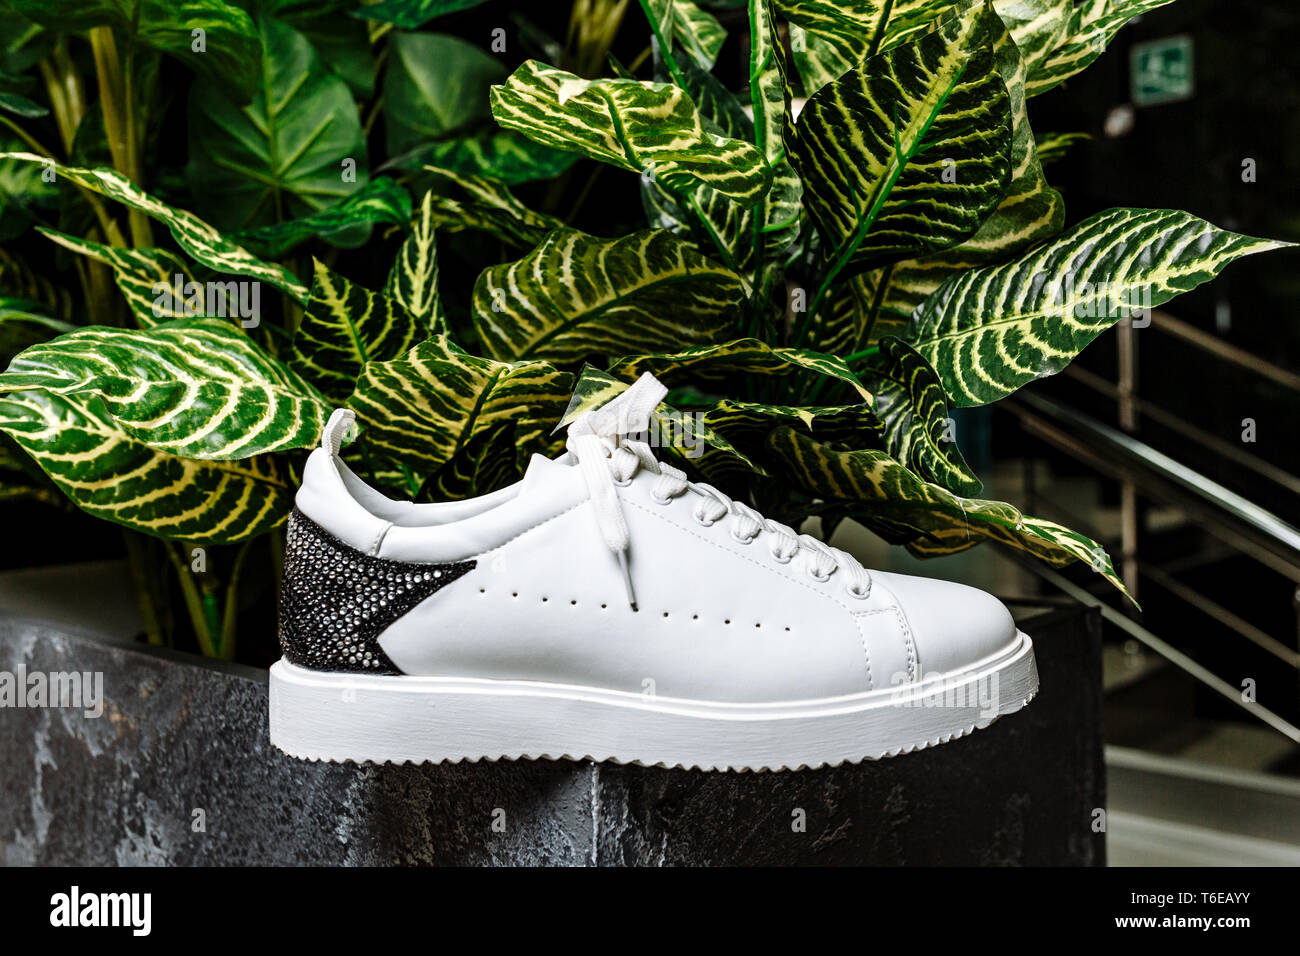 Elegante weiße Sneaker mit einem Stern Ornament aus Glitzersteinchen auf dem Hintergrund gegen die bunten Blätter der Pflanze Stockfoto